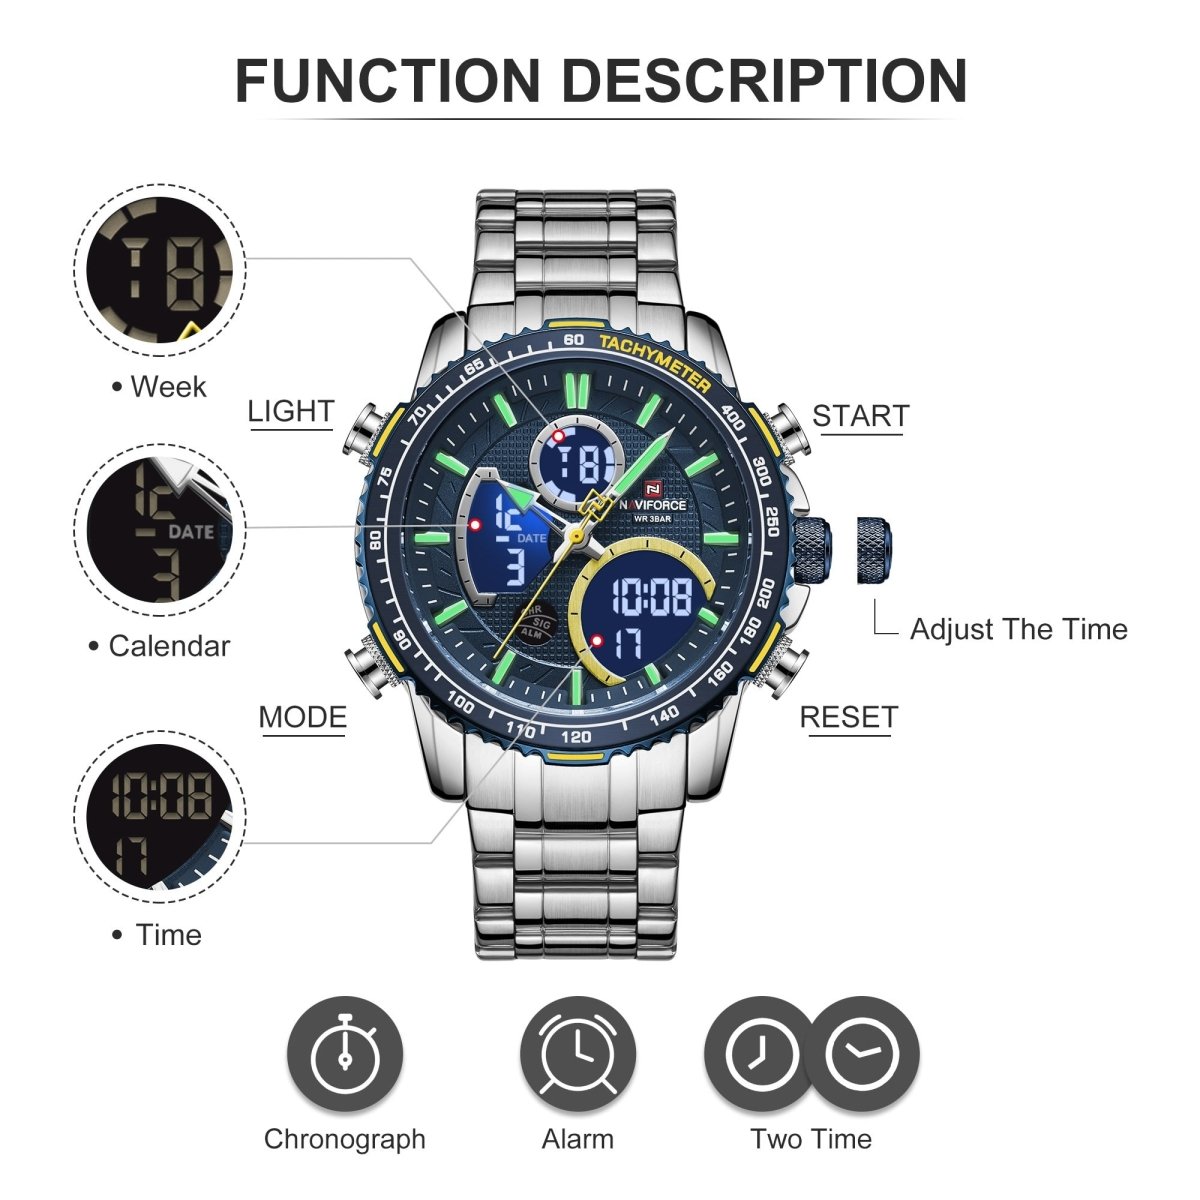 Relógio Naviforce NF9182 Visor Duplo (Azul e Prata) - Versomastore